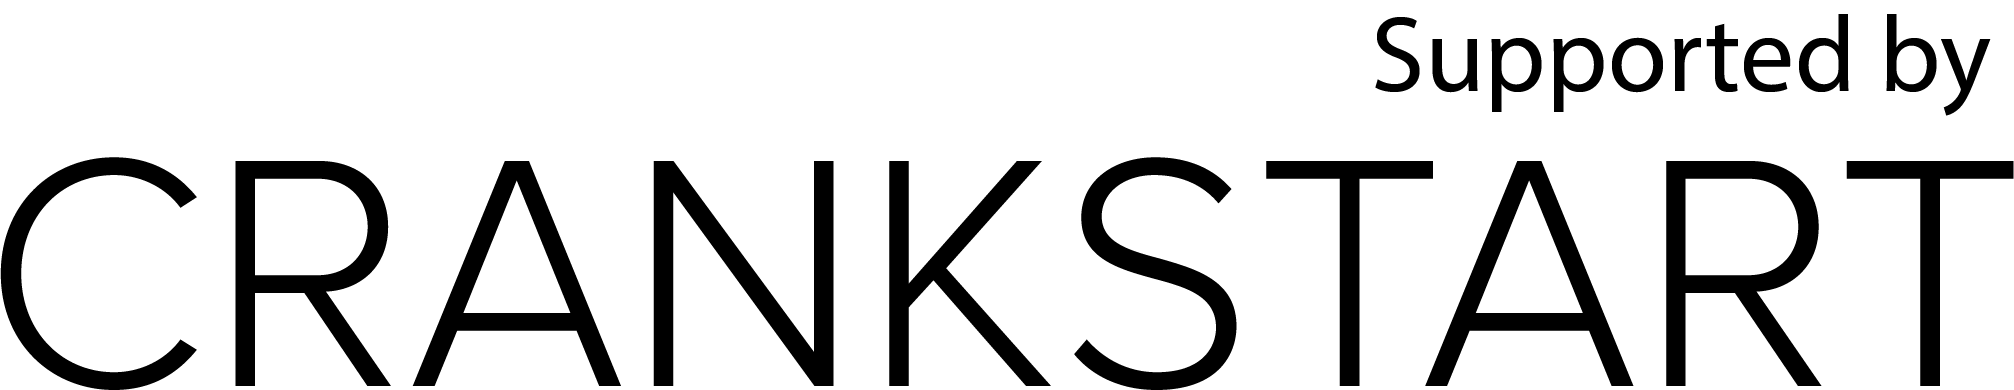 Crankstart logo